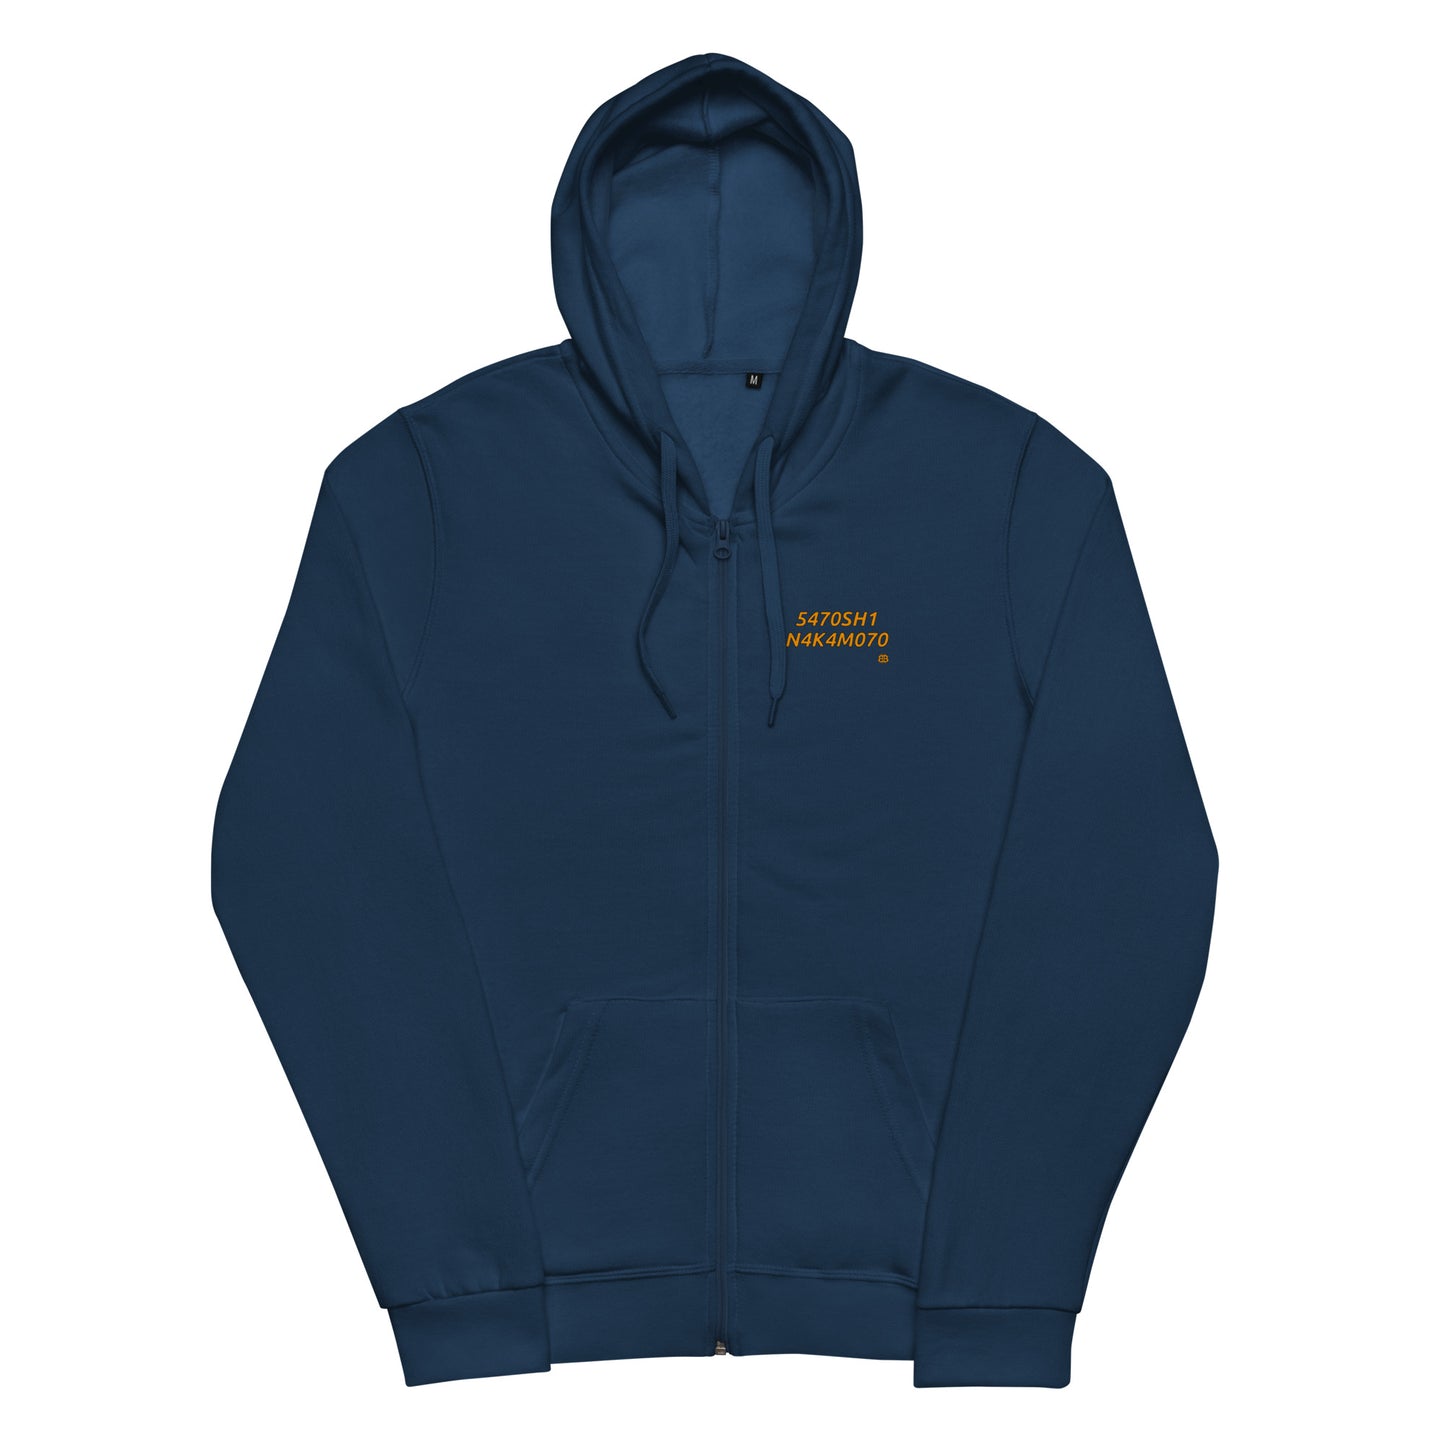 Unisex basic zip hoodie "N4K4M070_sm"